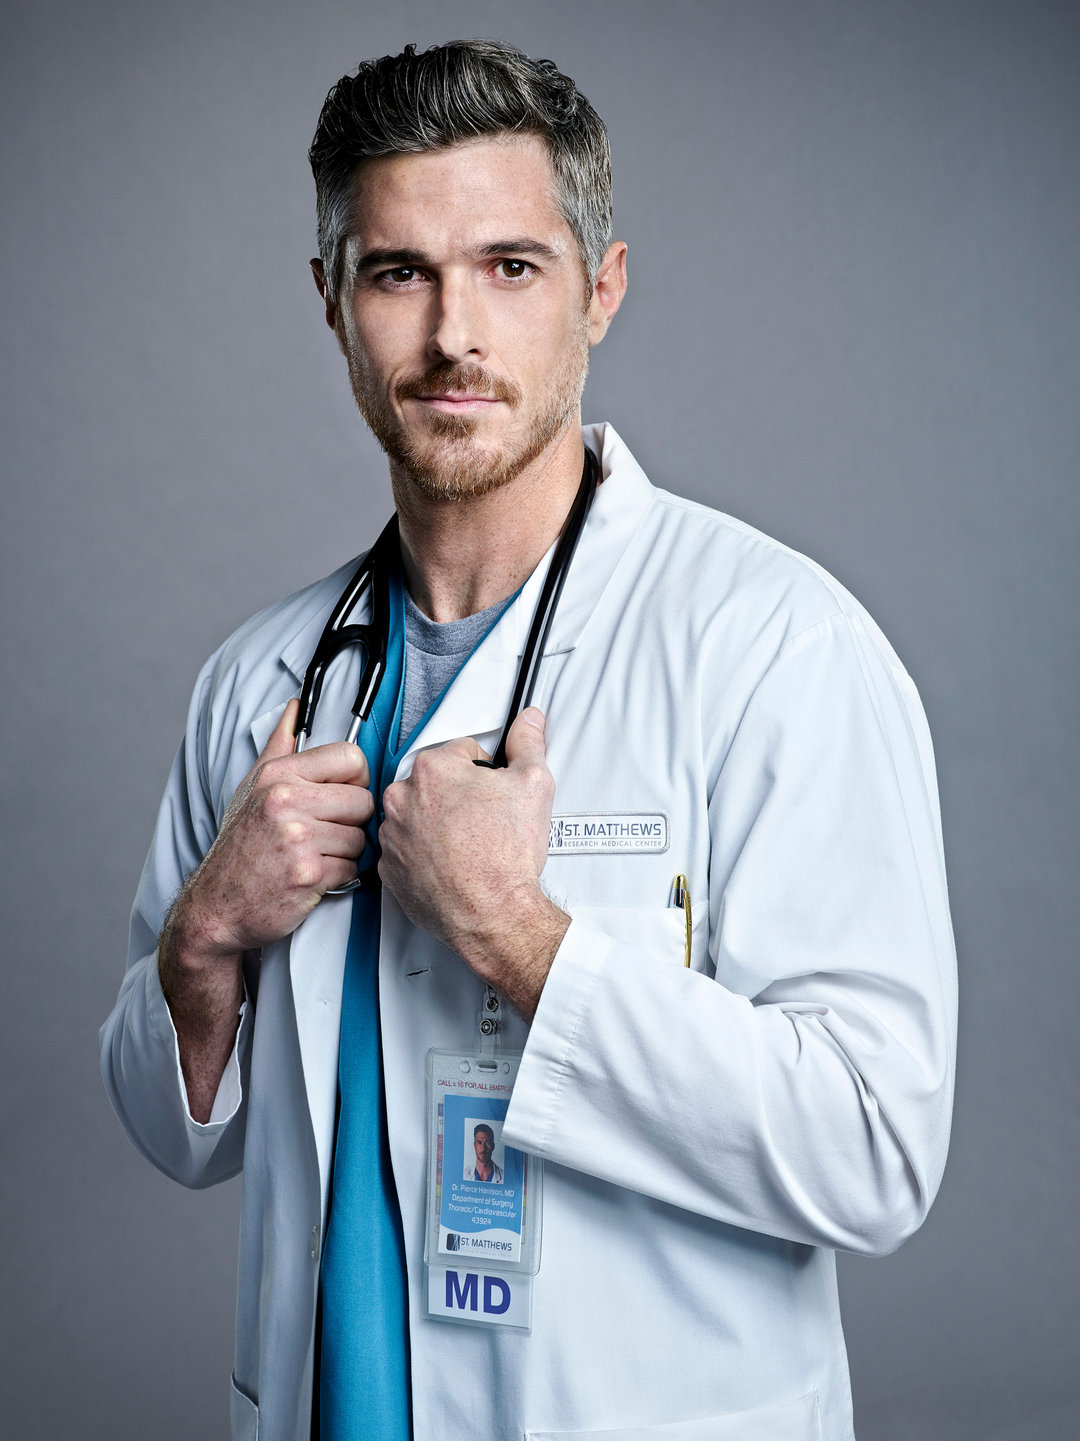 Вопрос врачу хирургу. Dave Annable. Доктор Evan Antin. Дэйв Эннэйбл красные браслеты. Красивый врач мужчина.